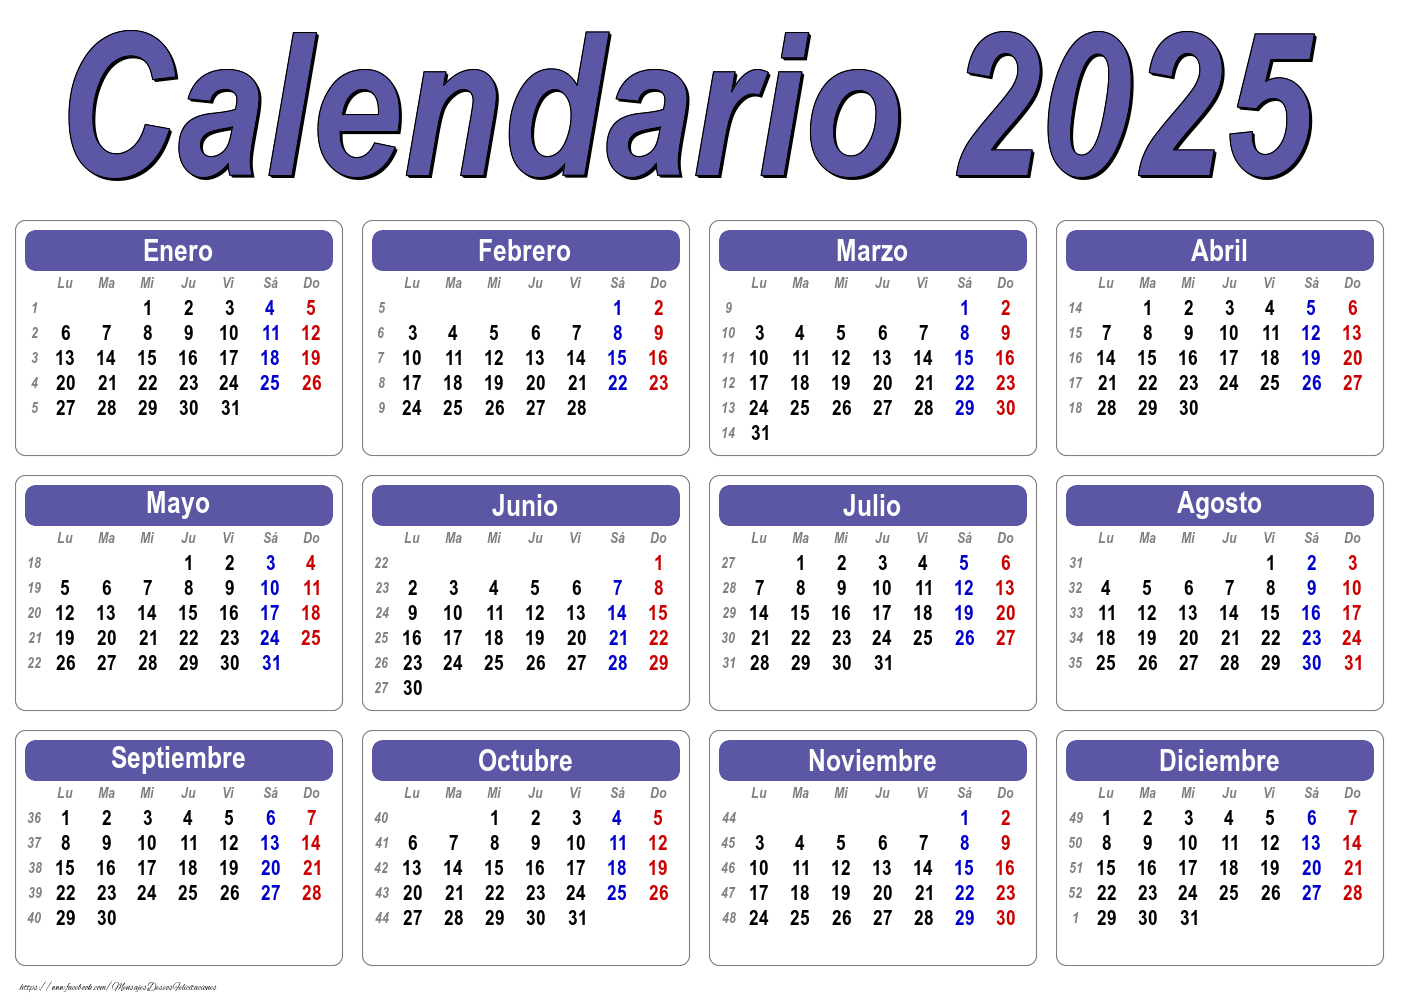 Calendarios Calendario 2025 - Clásico - Modelo 001